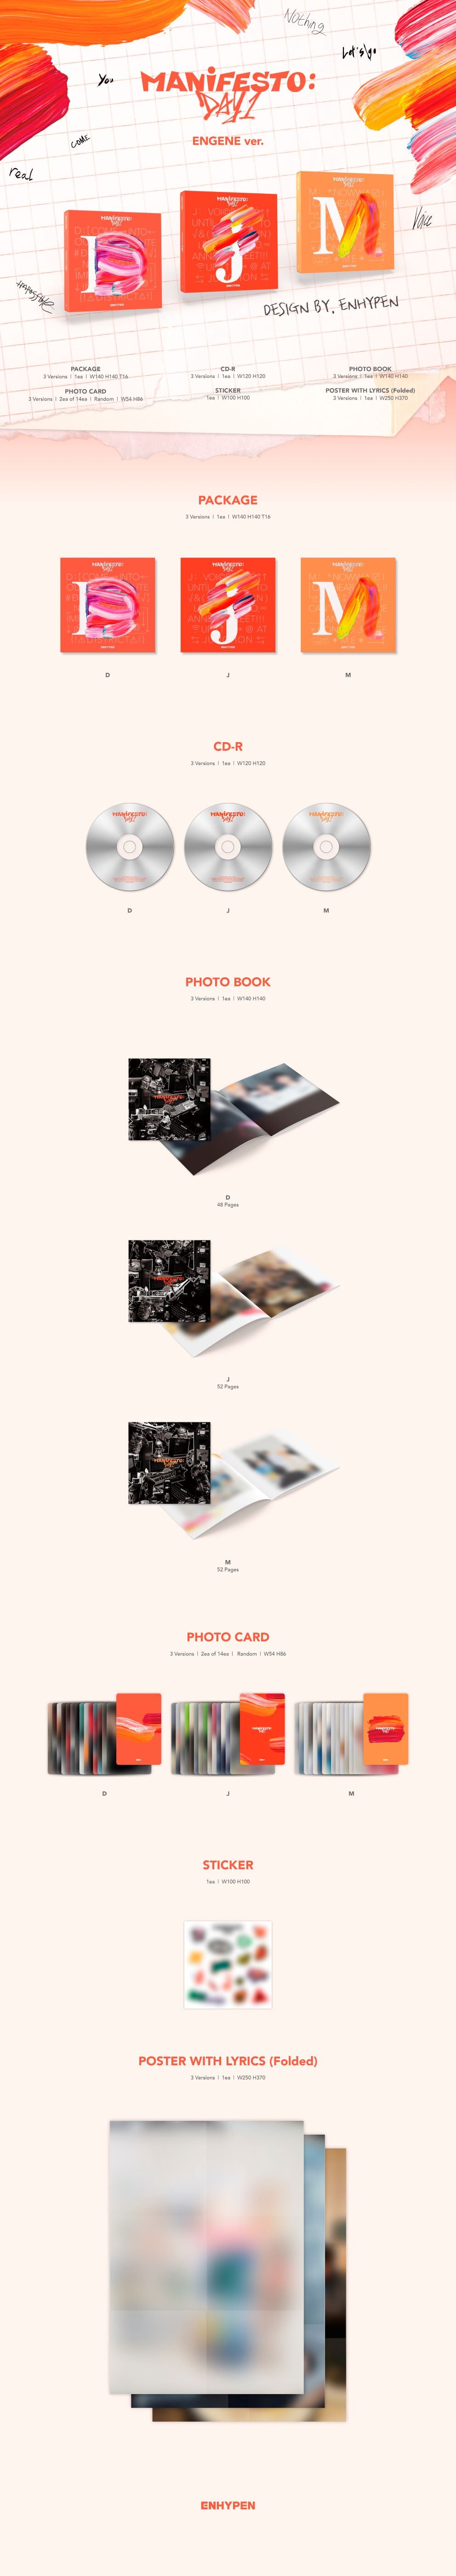 ENHYPEN 3rd Mini Album MANIFESTO : DAY 1 (ENGENE Version)